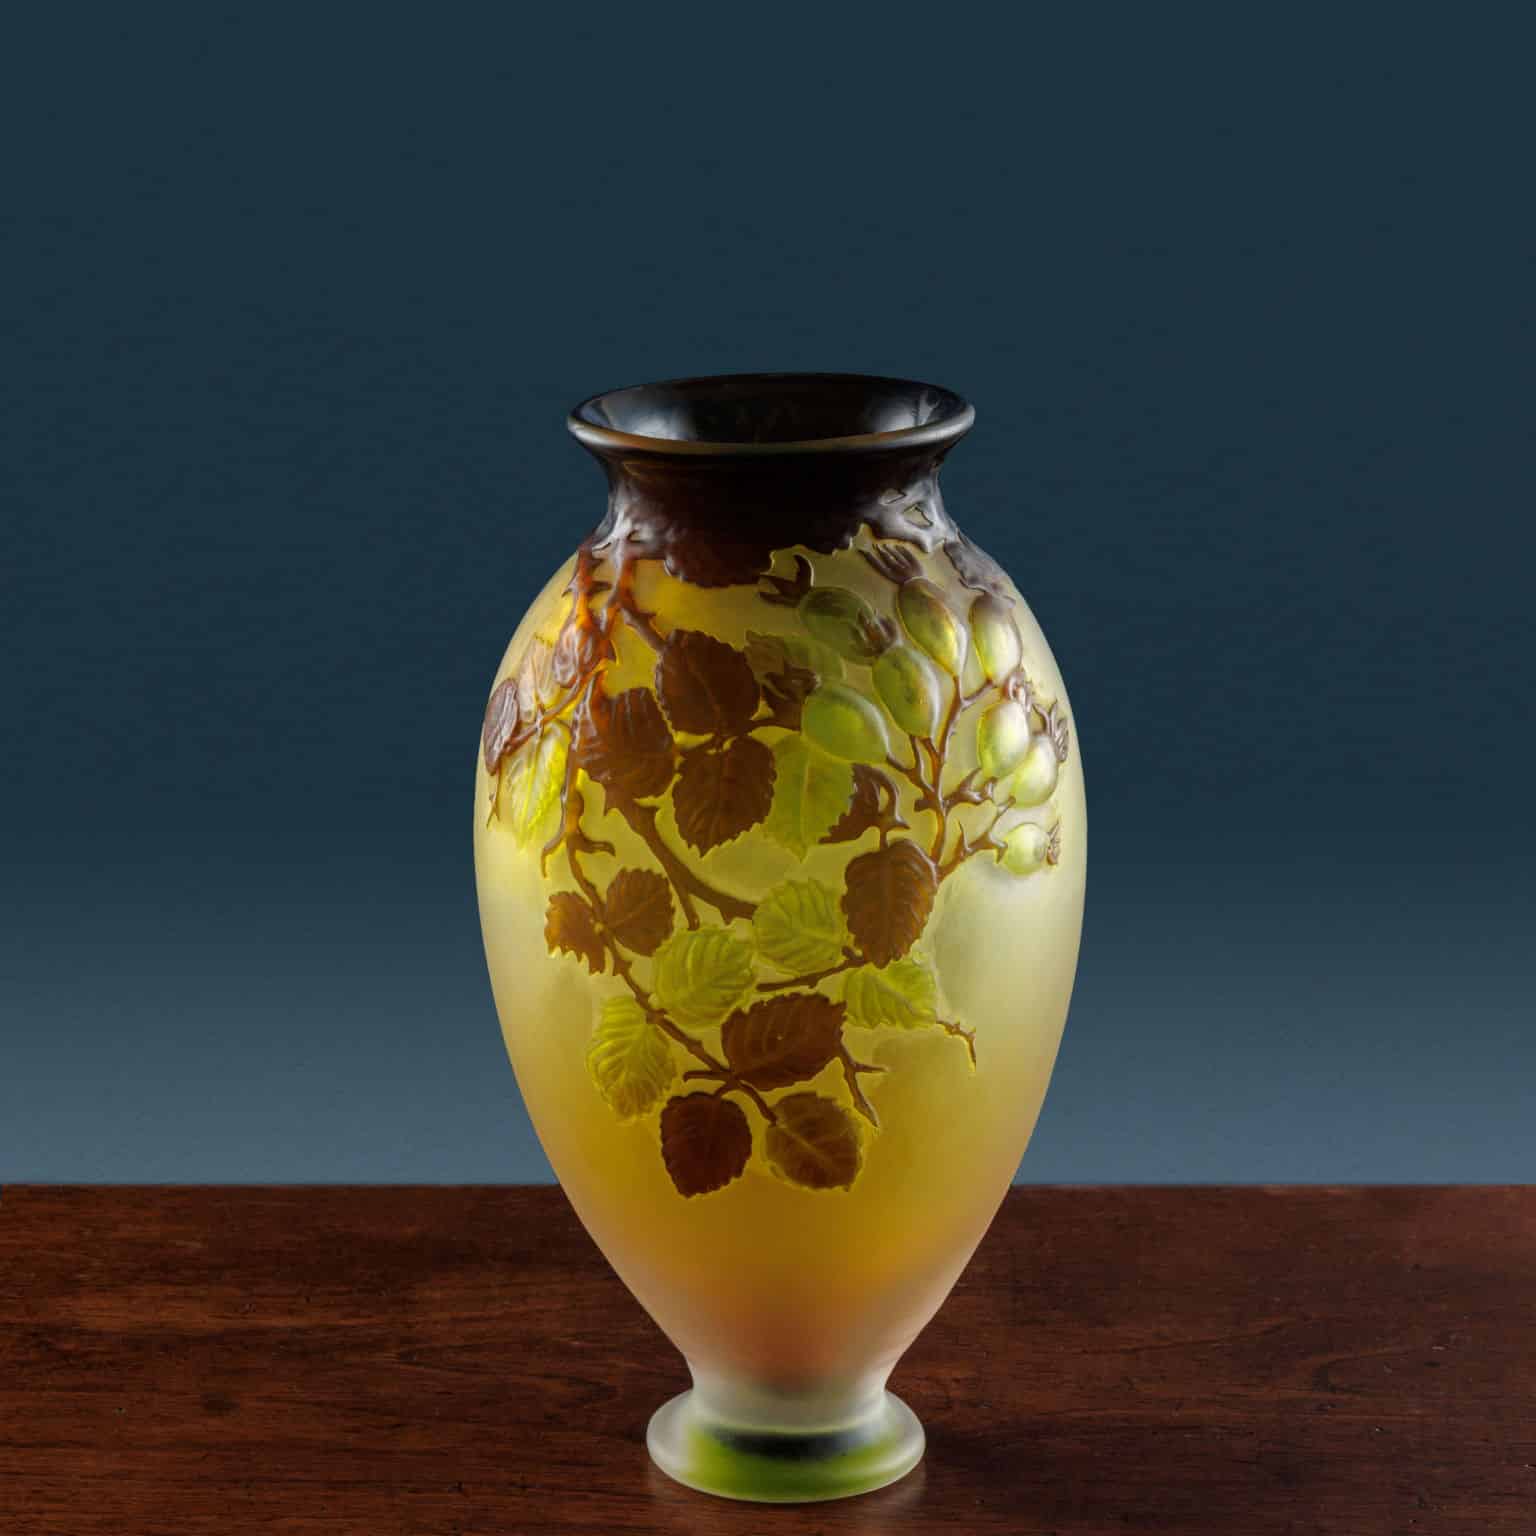 Émile Gallé’s “Soufflé” Vase with Dog Rose.  Nancy, c. 1925